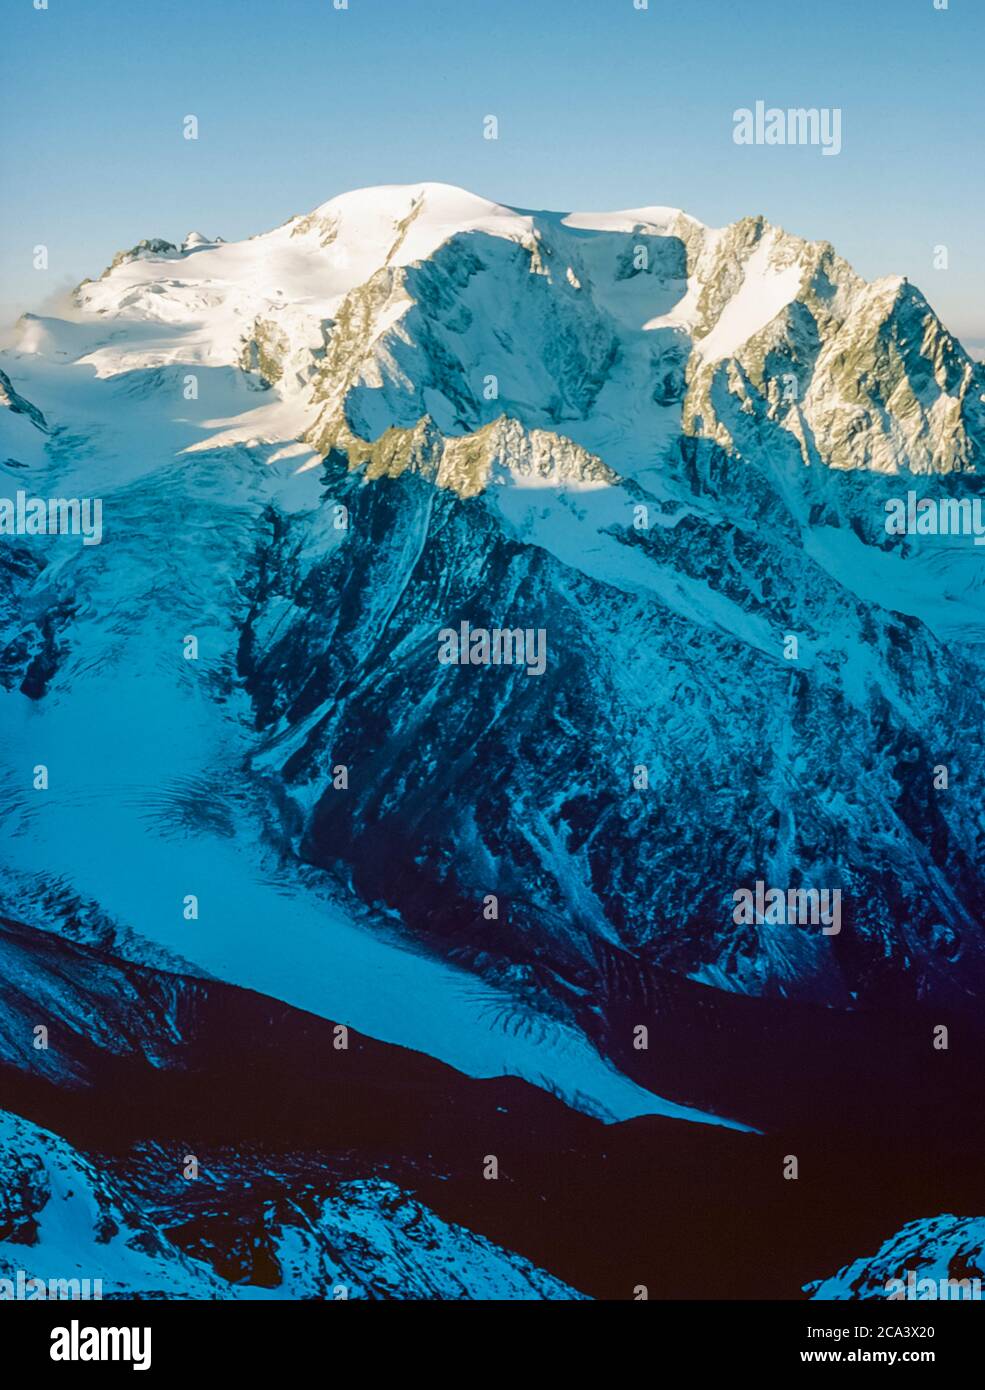 Suisse. Ce sont les montagnes des Alpes Arolla en Suisse qui sont vues et traversées sur la route des anciens chasseurs de haute montagne entre la ville française de Chamonix et la ville suisse de Zermatt. C'est le Mont Velan la montagne principale située au-dessus du village suisse de Bourg St Pierre dans le massif du Mont Velan Banque D'Images